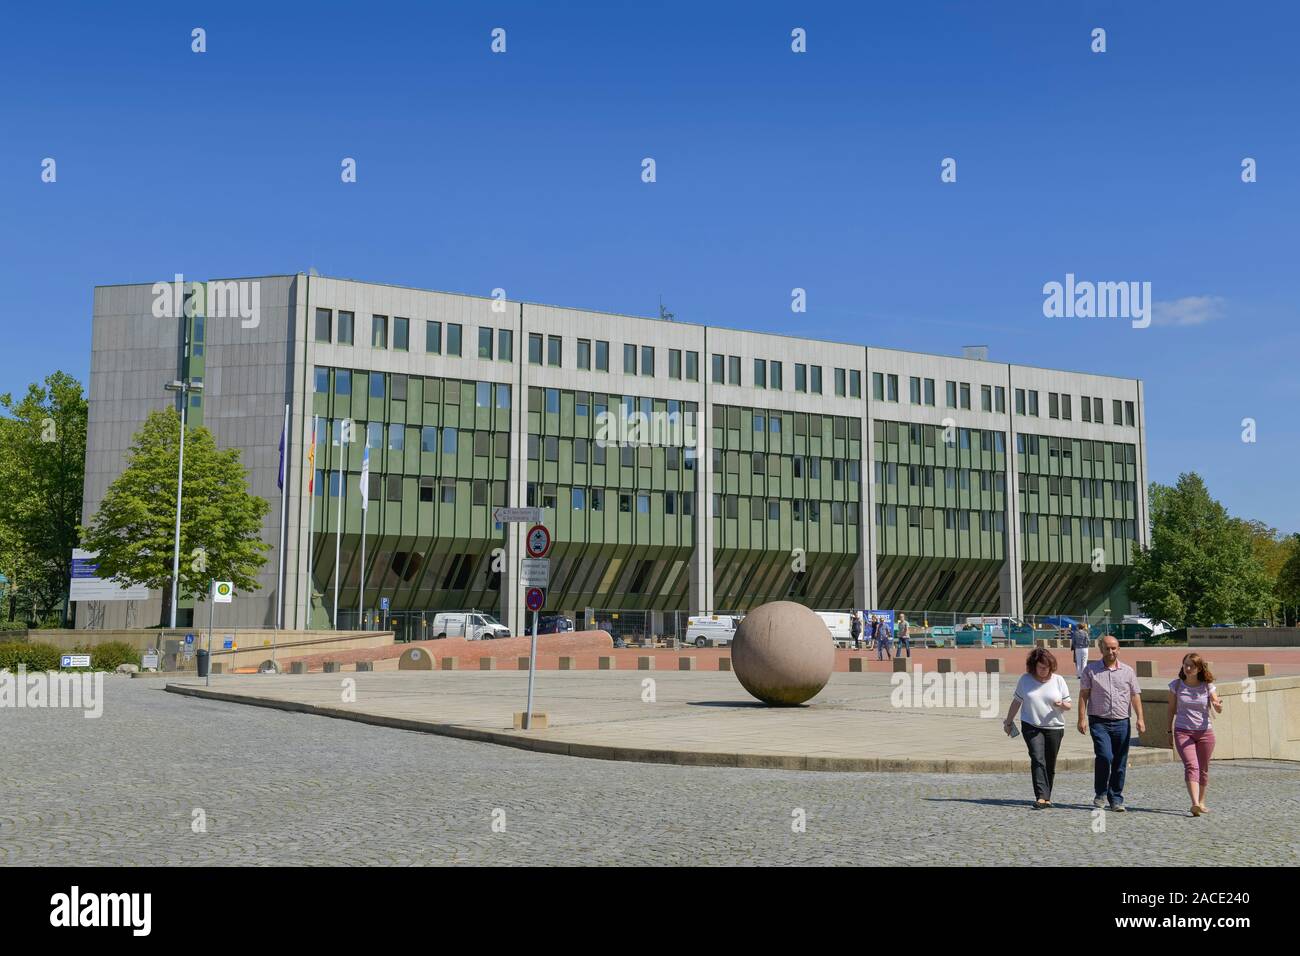 Bundesministerium für Umwelt, Naturschutz und nukleare Sicherheit, Robert-Schumann-Platz, Bonn, Nordrhein-Westfalen, Deutschland Stock Photo